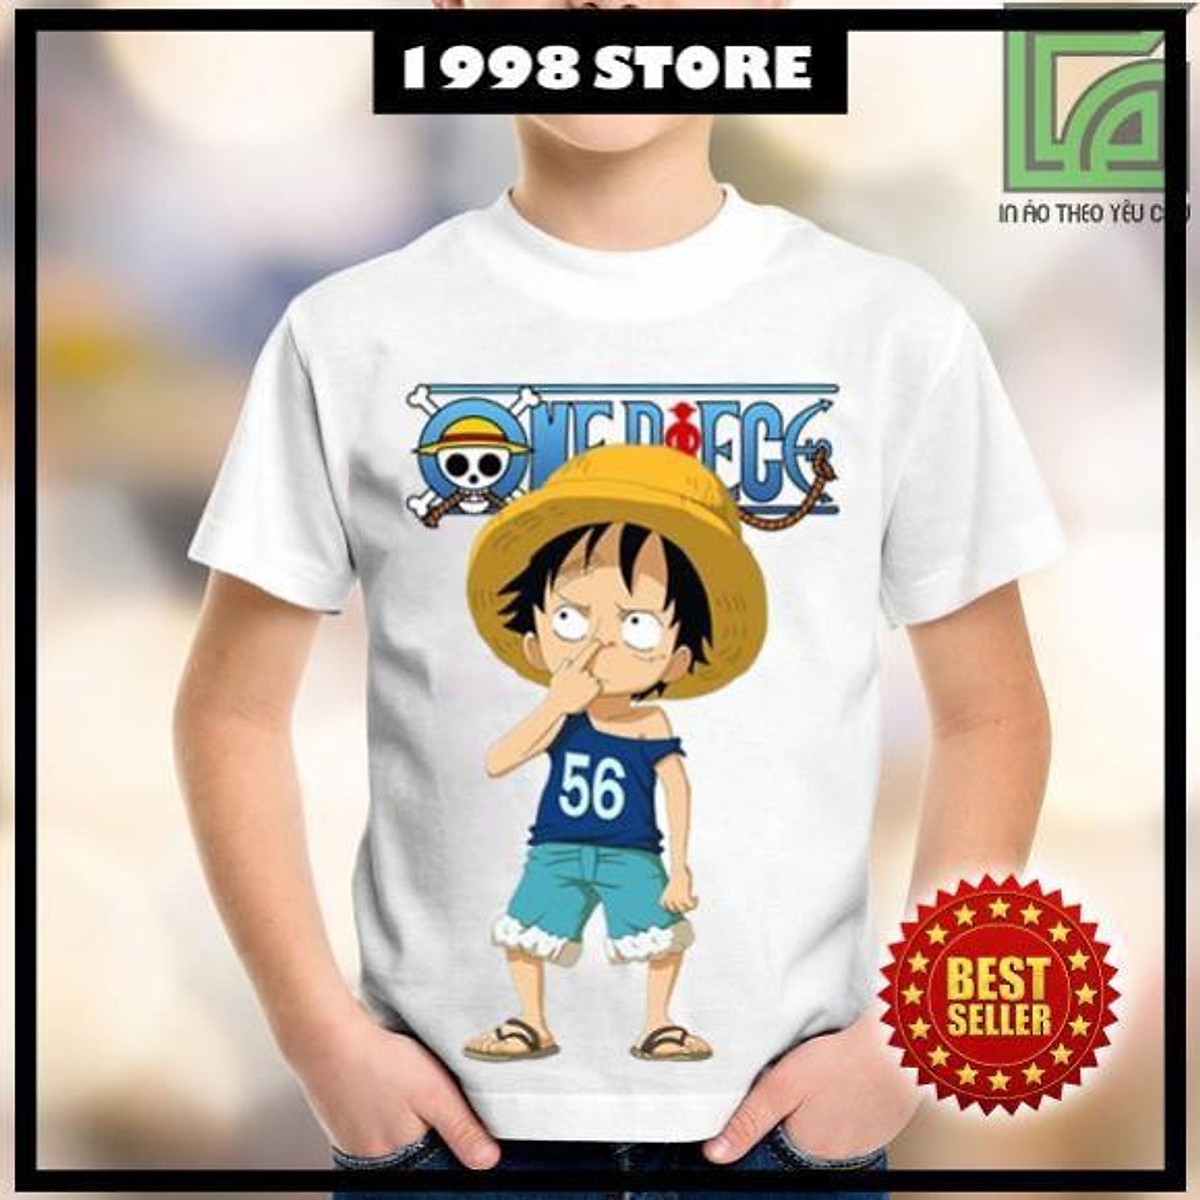 Áo thun One Piece chibi sẽ là sự lựa chọn hoàn hảo cho những ai yêu thích anime One Piece. Với nhiều mẫu mã đa dạng và phong cách trẻ trung, áo thun của chúng tôi sẽ tạo nên điểm nhấn cho phong cách thời trang của bạn.